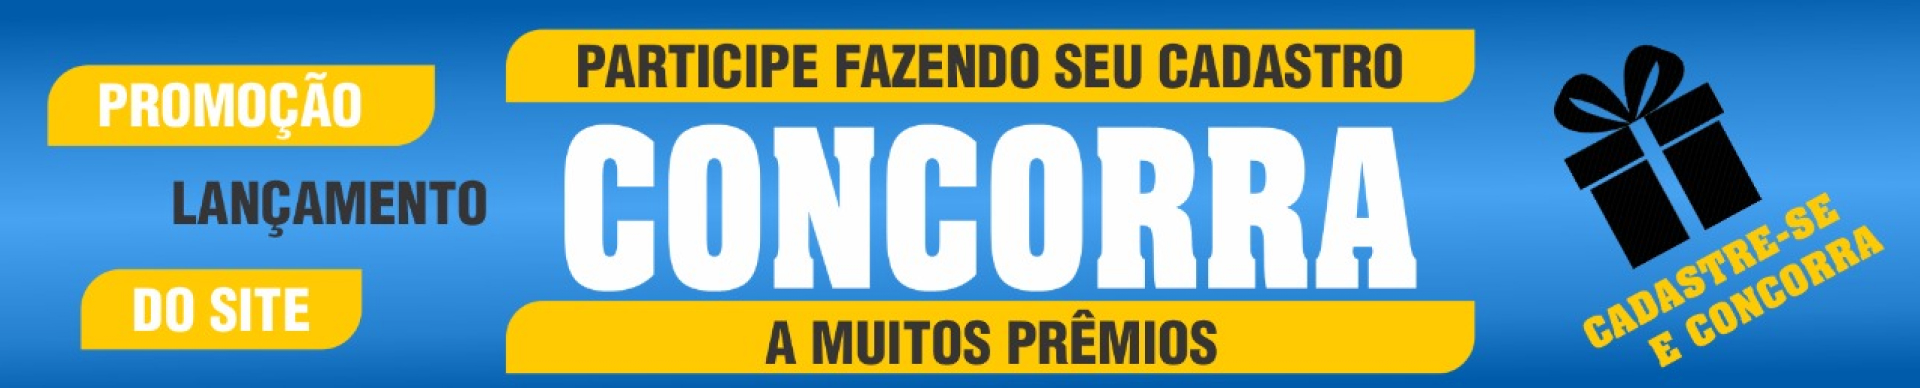 banner promocao 1